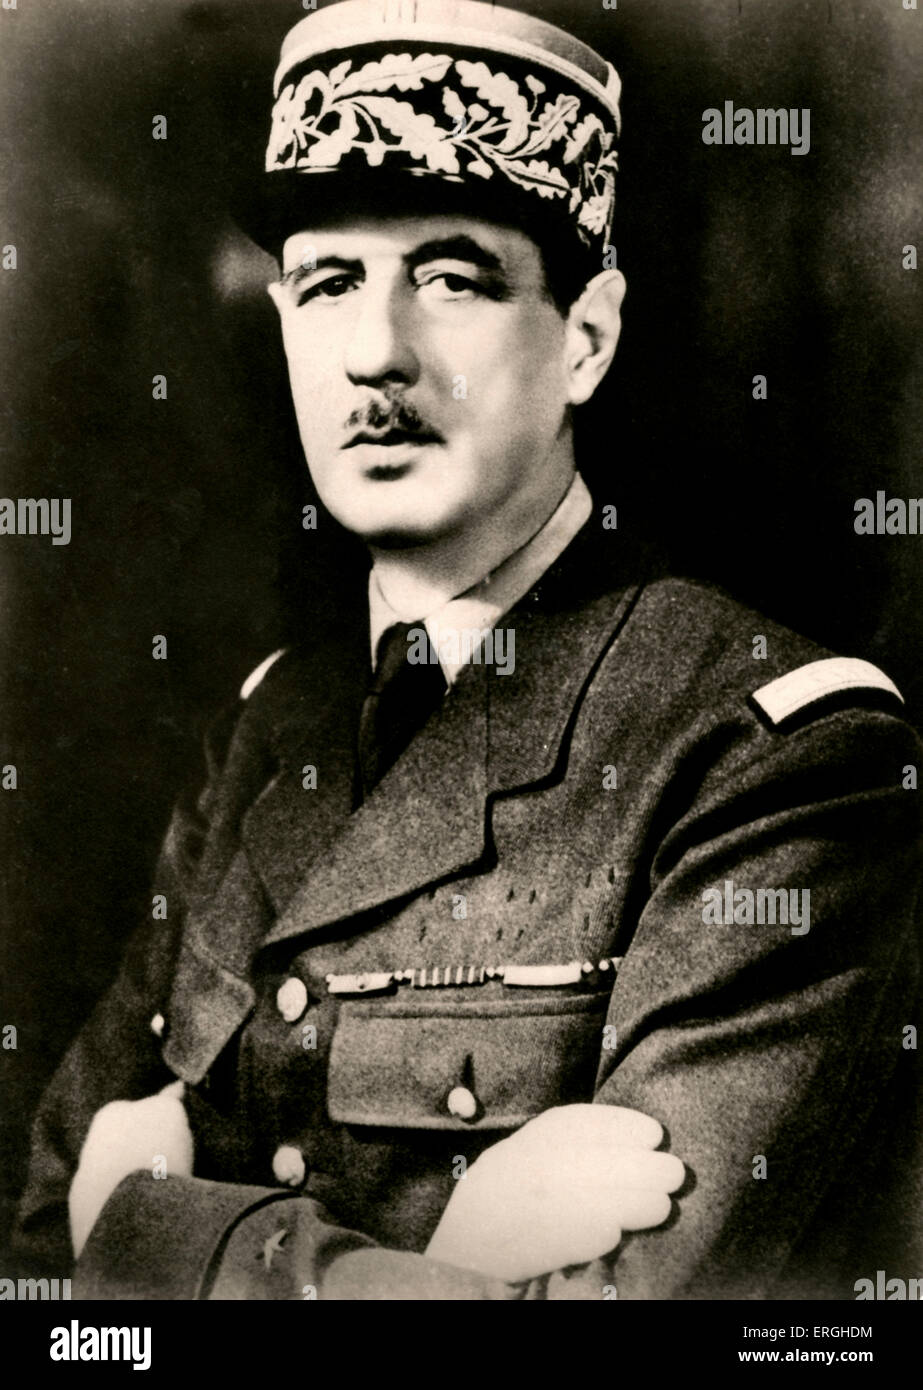 Charles de Gaulle - portrait. Le général français des Forces françaises libres (Forces françaises libres) pendant la Seconde Guerre mondiale, et 2 Banque D'Images